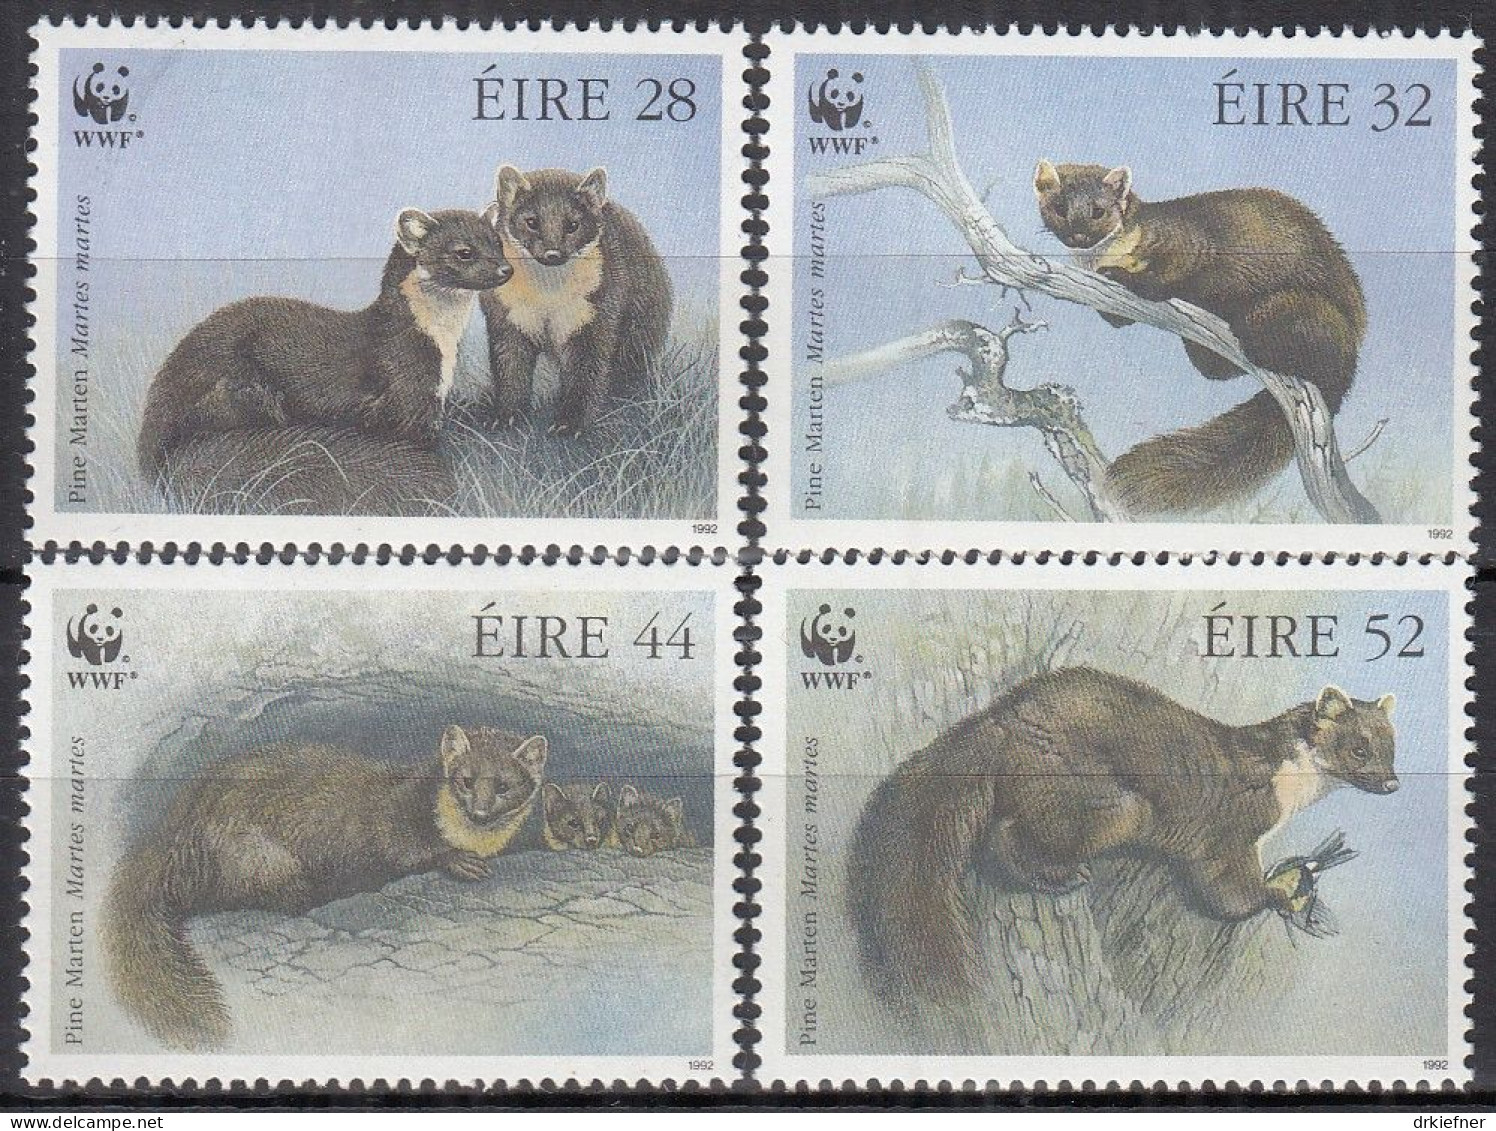 IRLAND  798-801, Postfrisch **, WWF, Weltweiter Naturschutz: Baummarder, 1992 - Nuevos